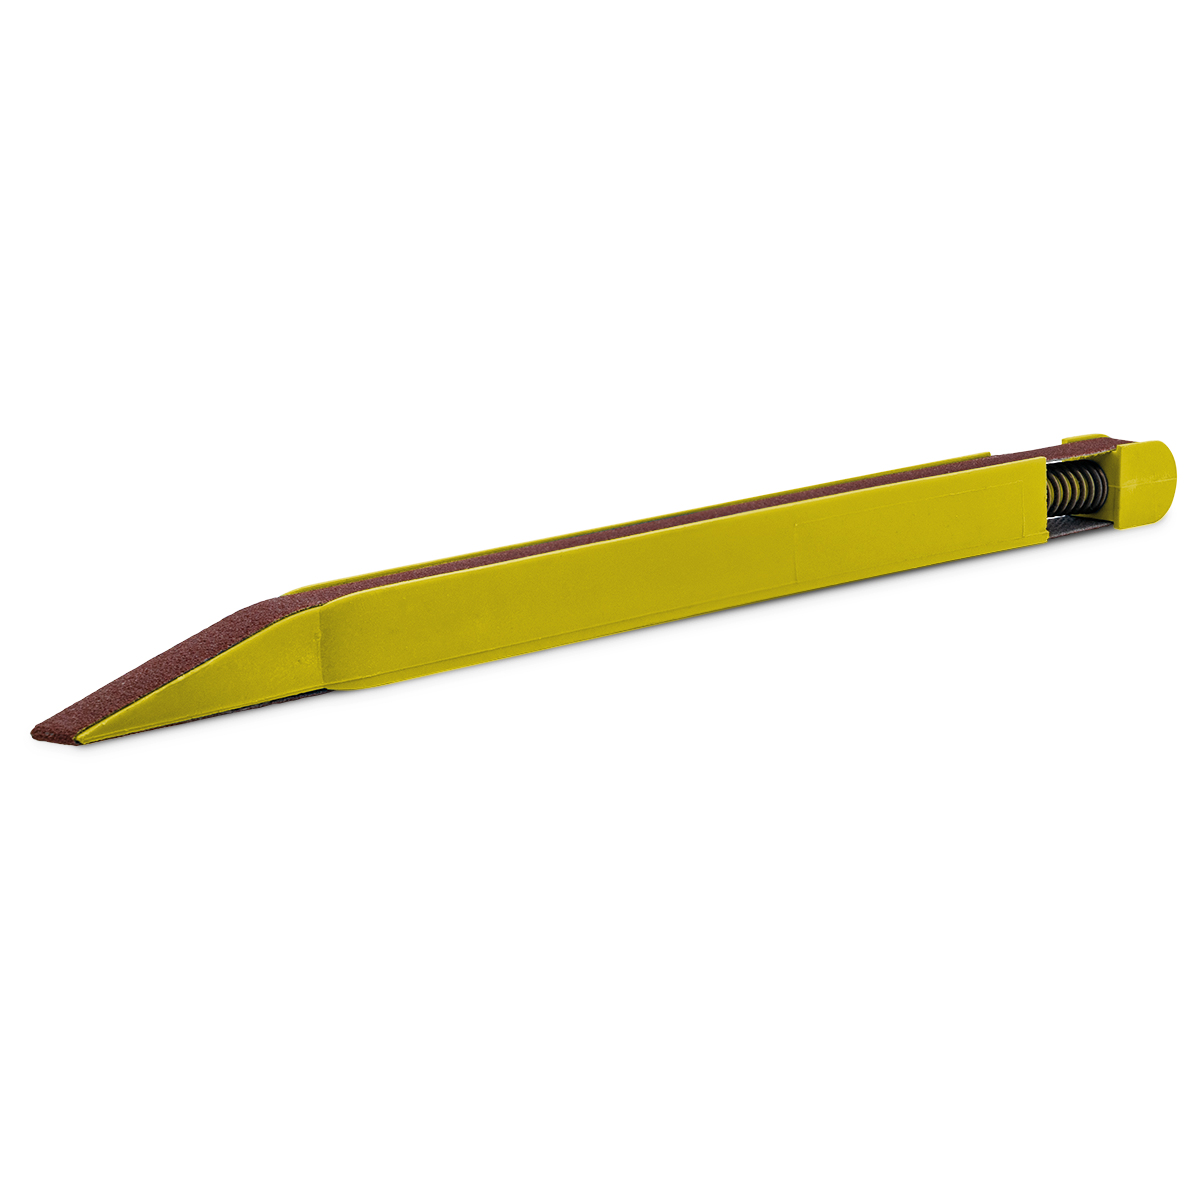 Schleifstift, Korn 400, gelb, für Schleifbänder mit 7 mm Breite